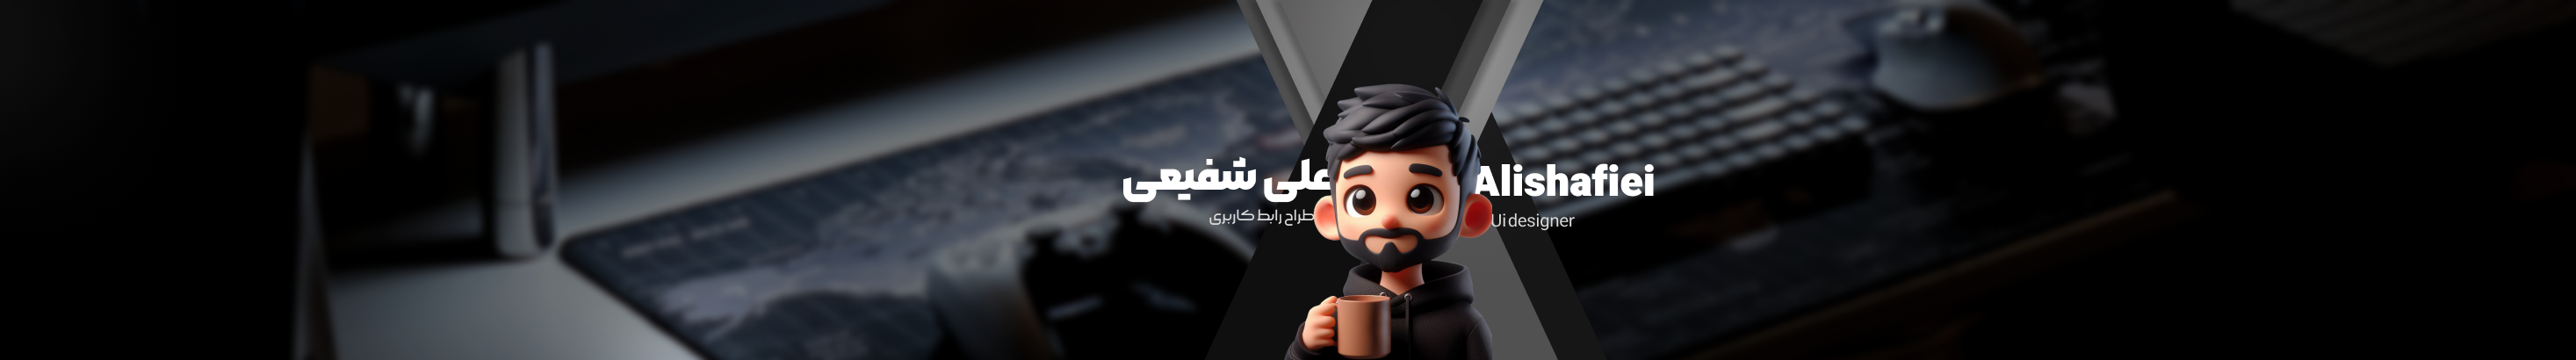 ali shafiei's profile banner